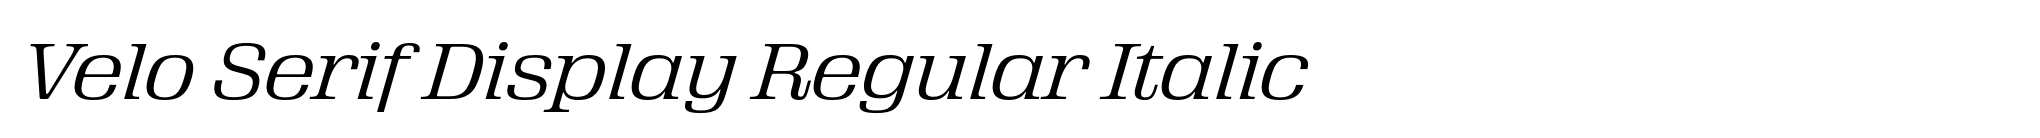 Velo Serif Display Regular Italic image